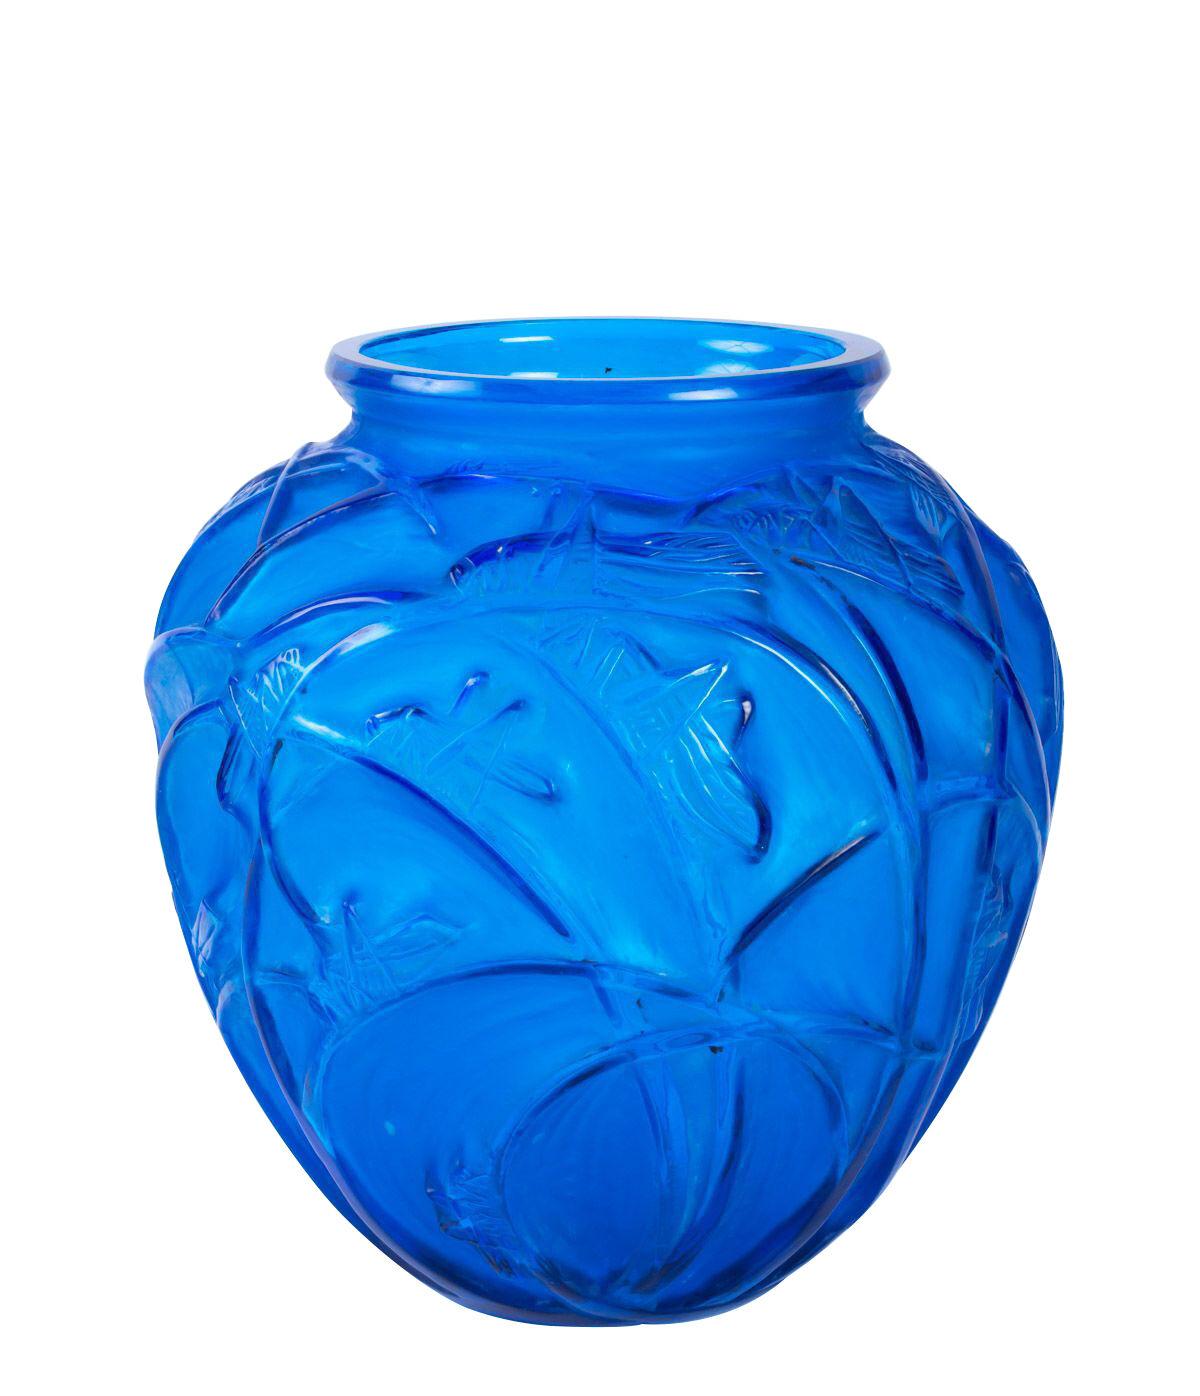 1912 René Lalique - Vase Sauterelles Electric Blue Glass